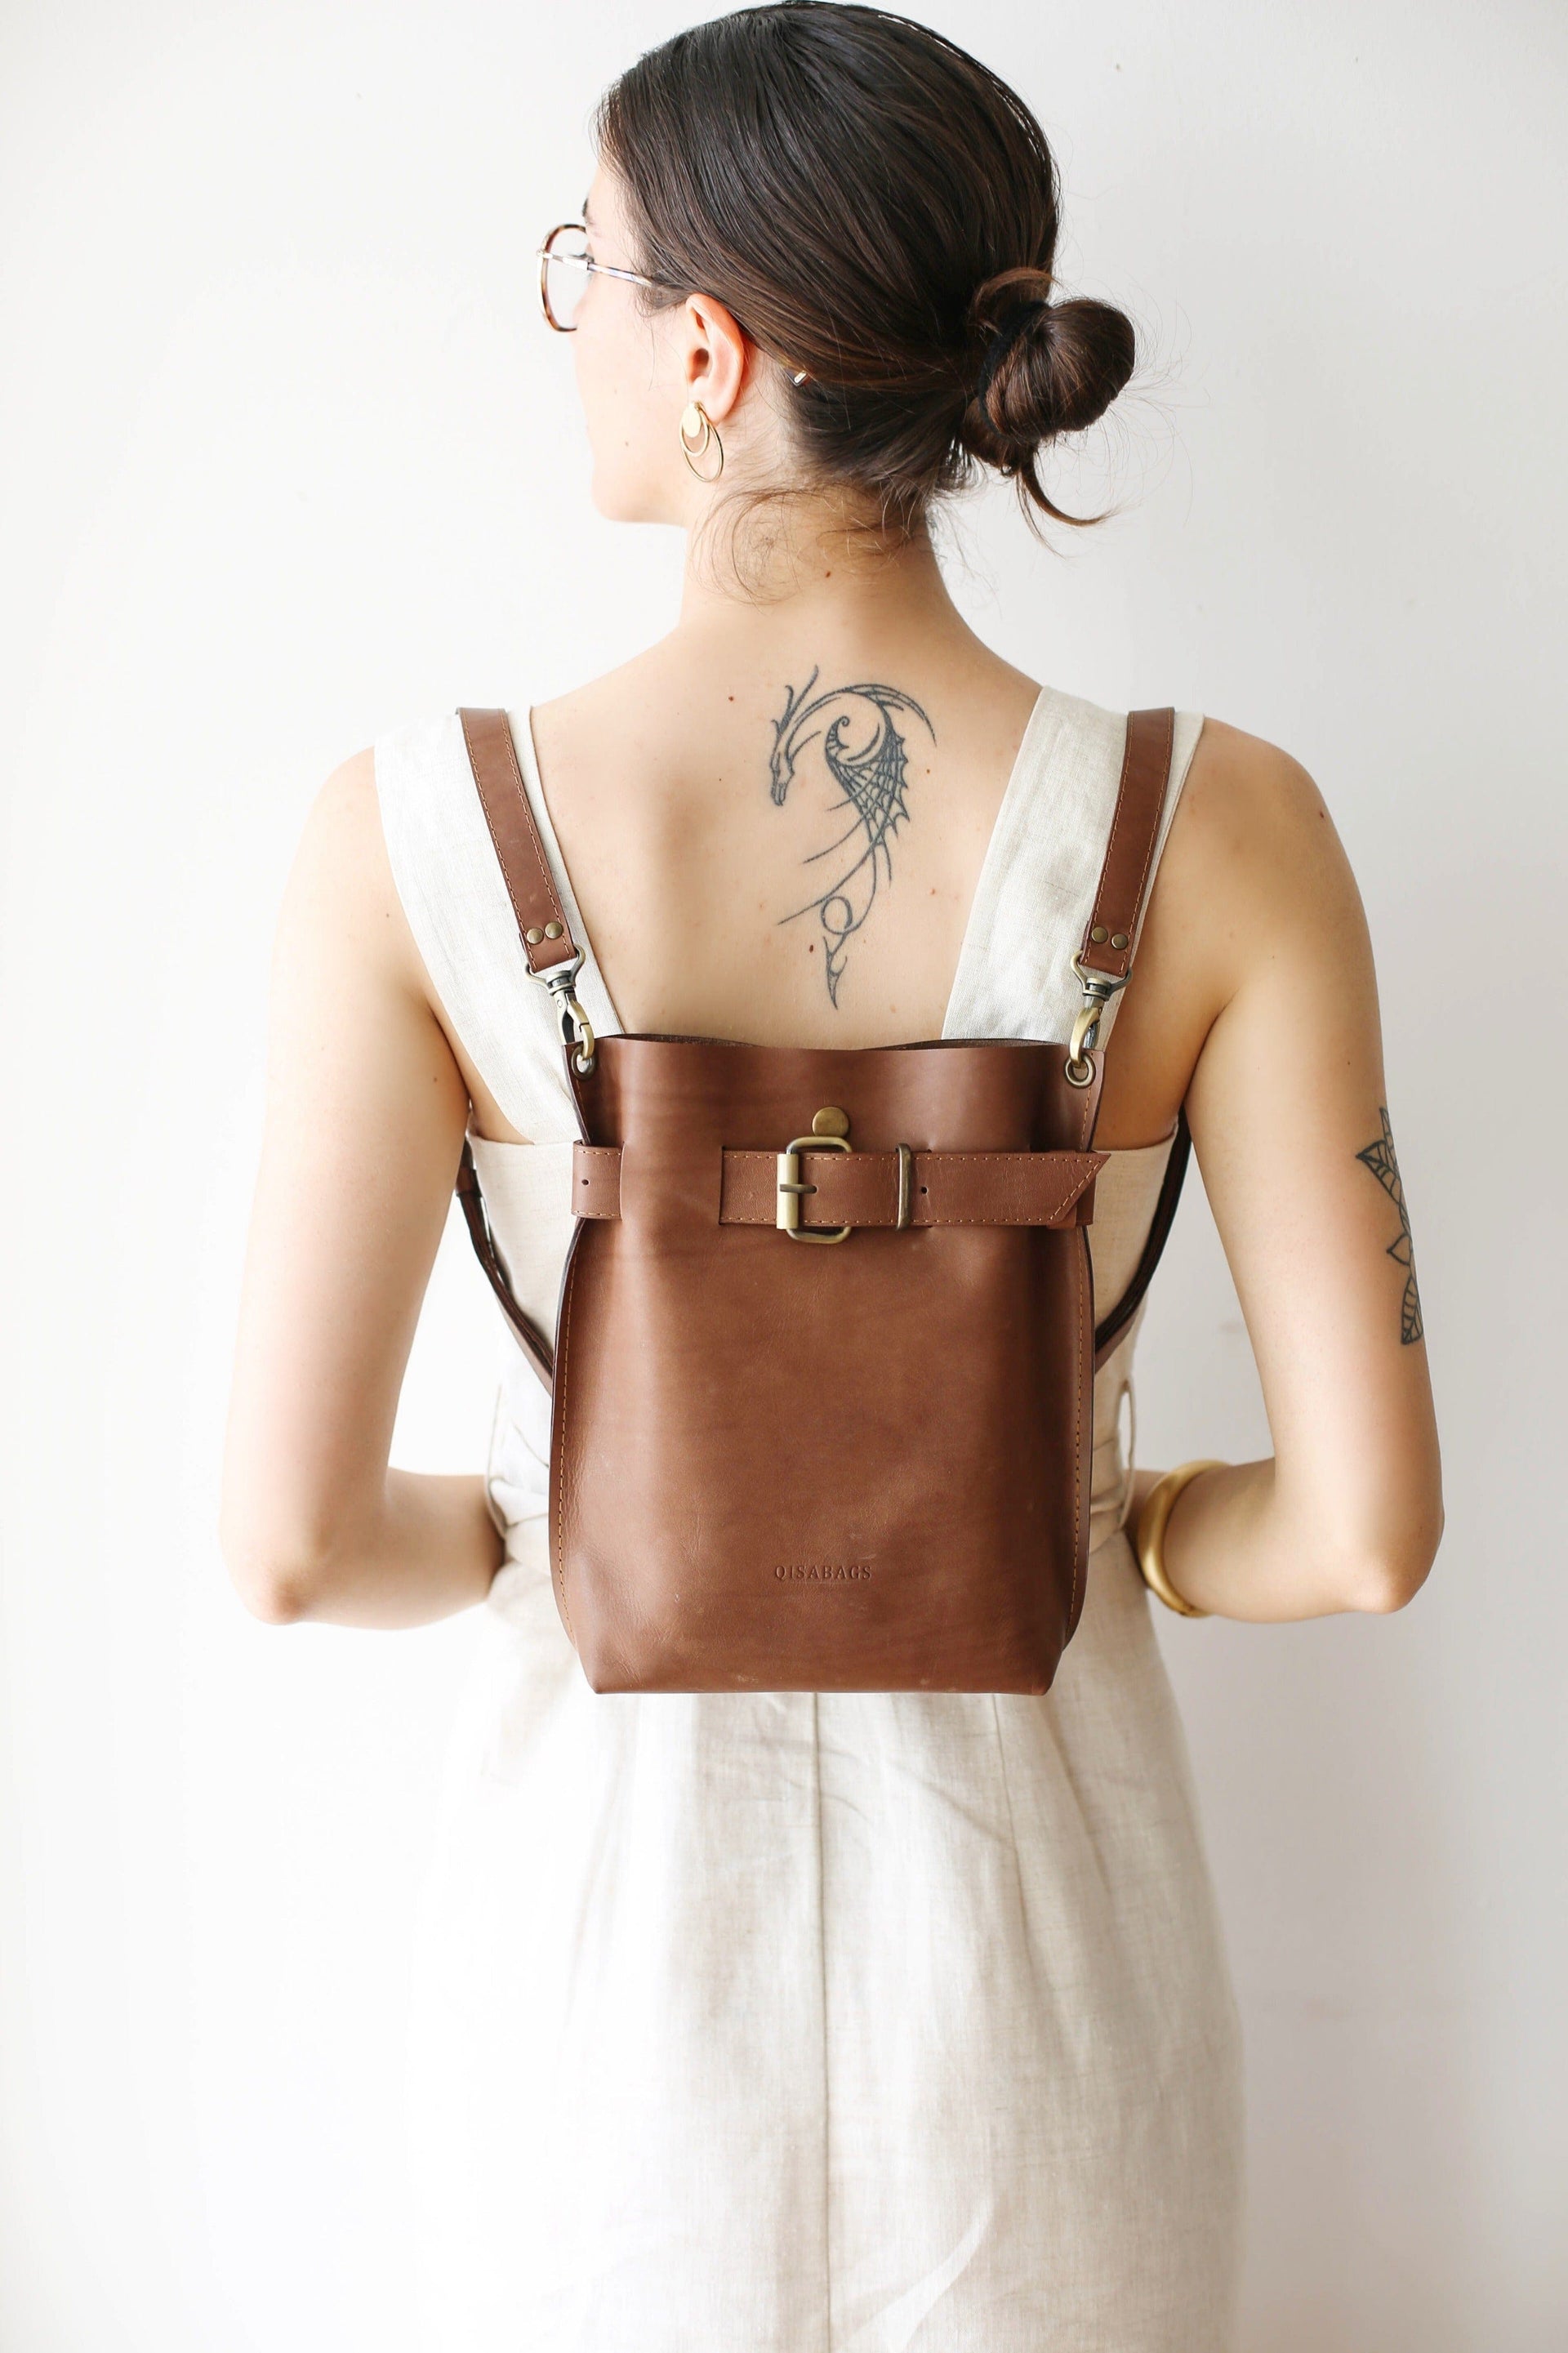 designer backpack purse